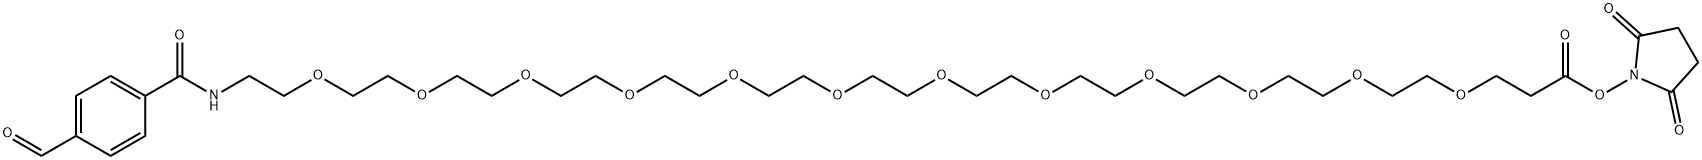 苯甲醛-酰胺-十二聚乙二醇-琥珀酰亚胺酯